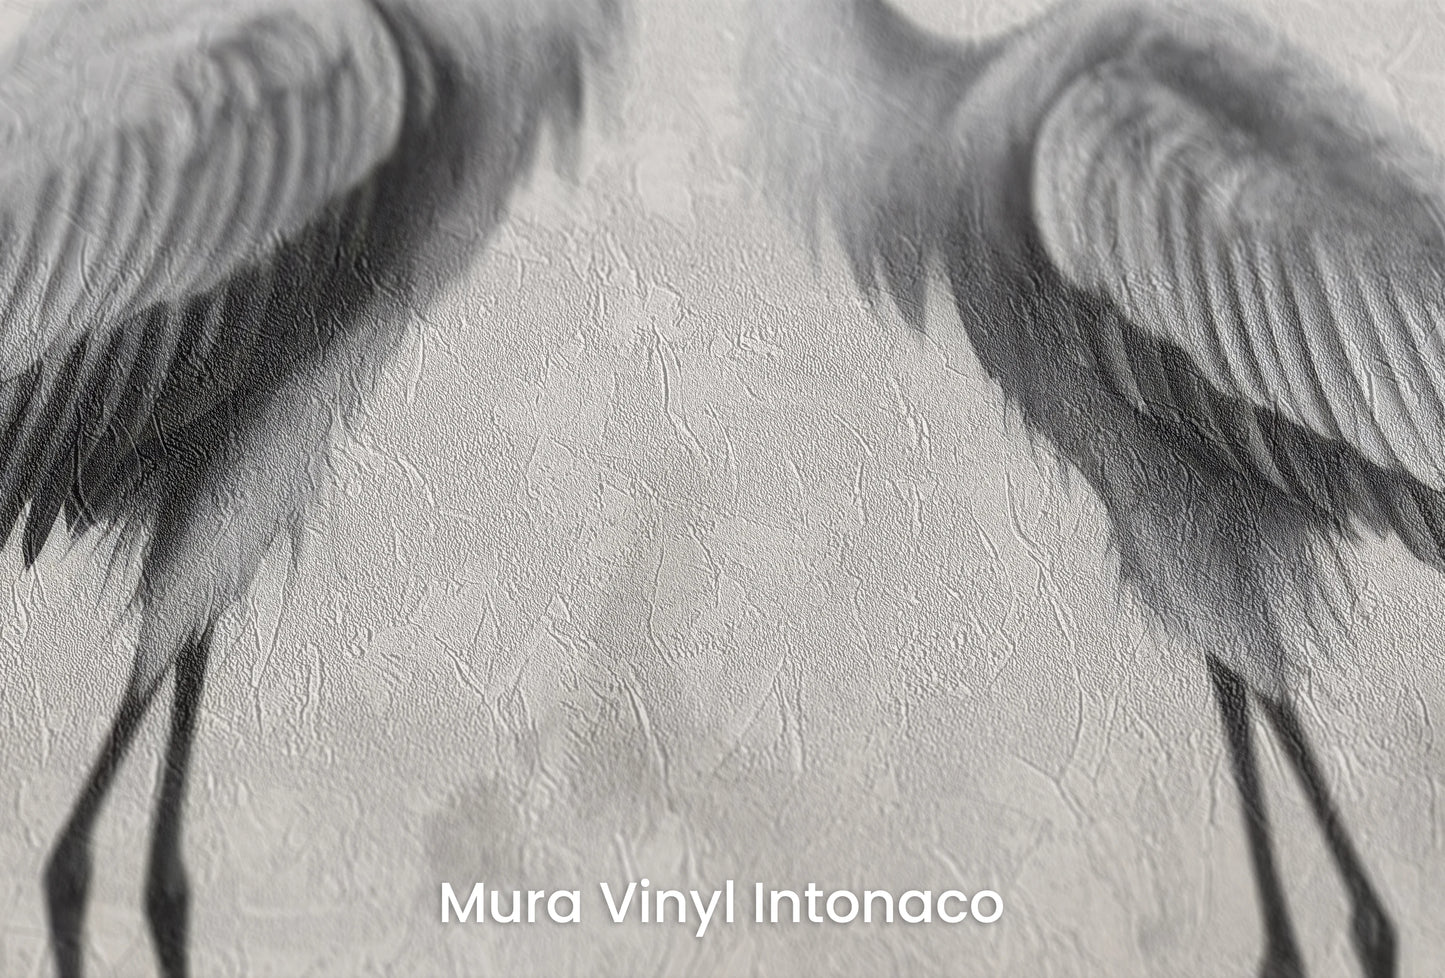 Zbliżenie na artystyczną fototapetę o nazwie Lunar Reflection na podłożu Mura Vinyl Intonaco - struktura tartego tynku.